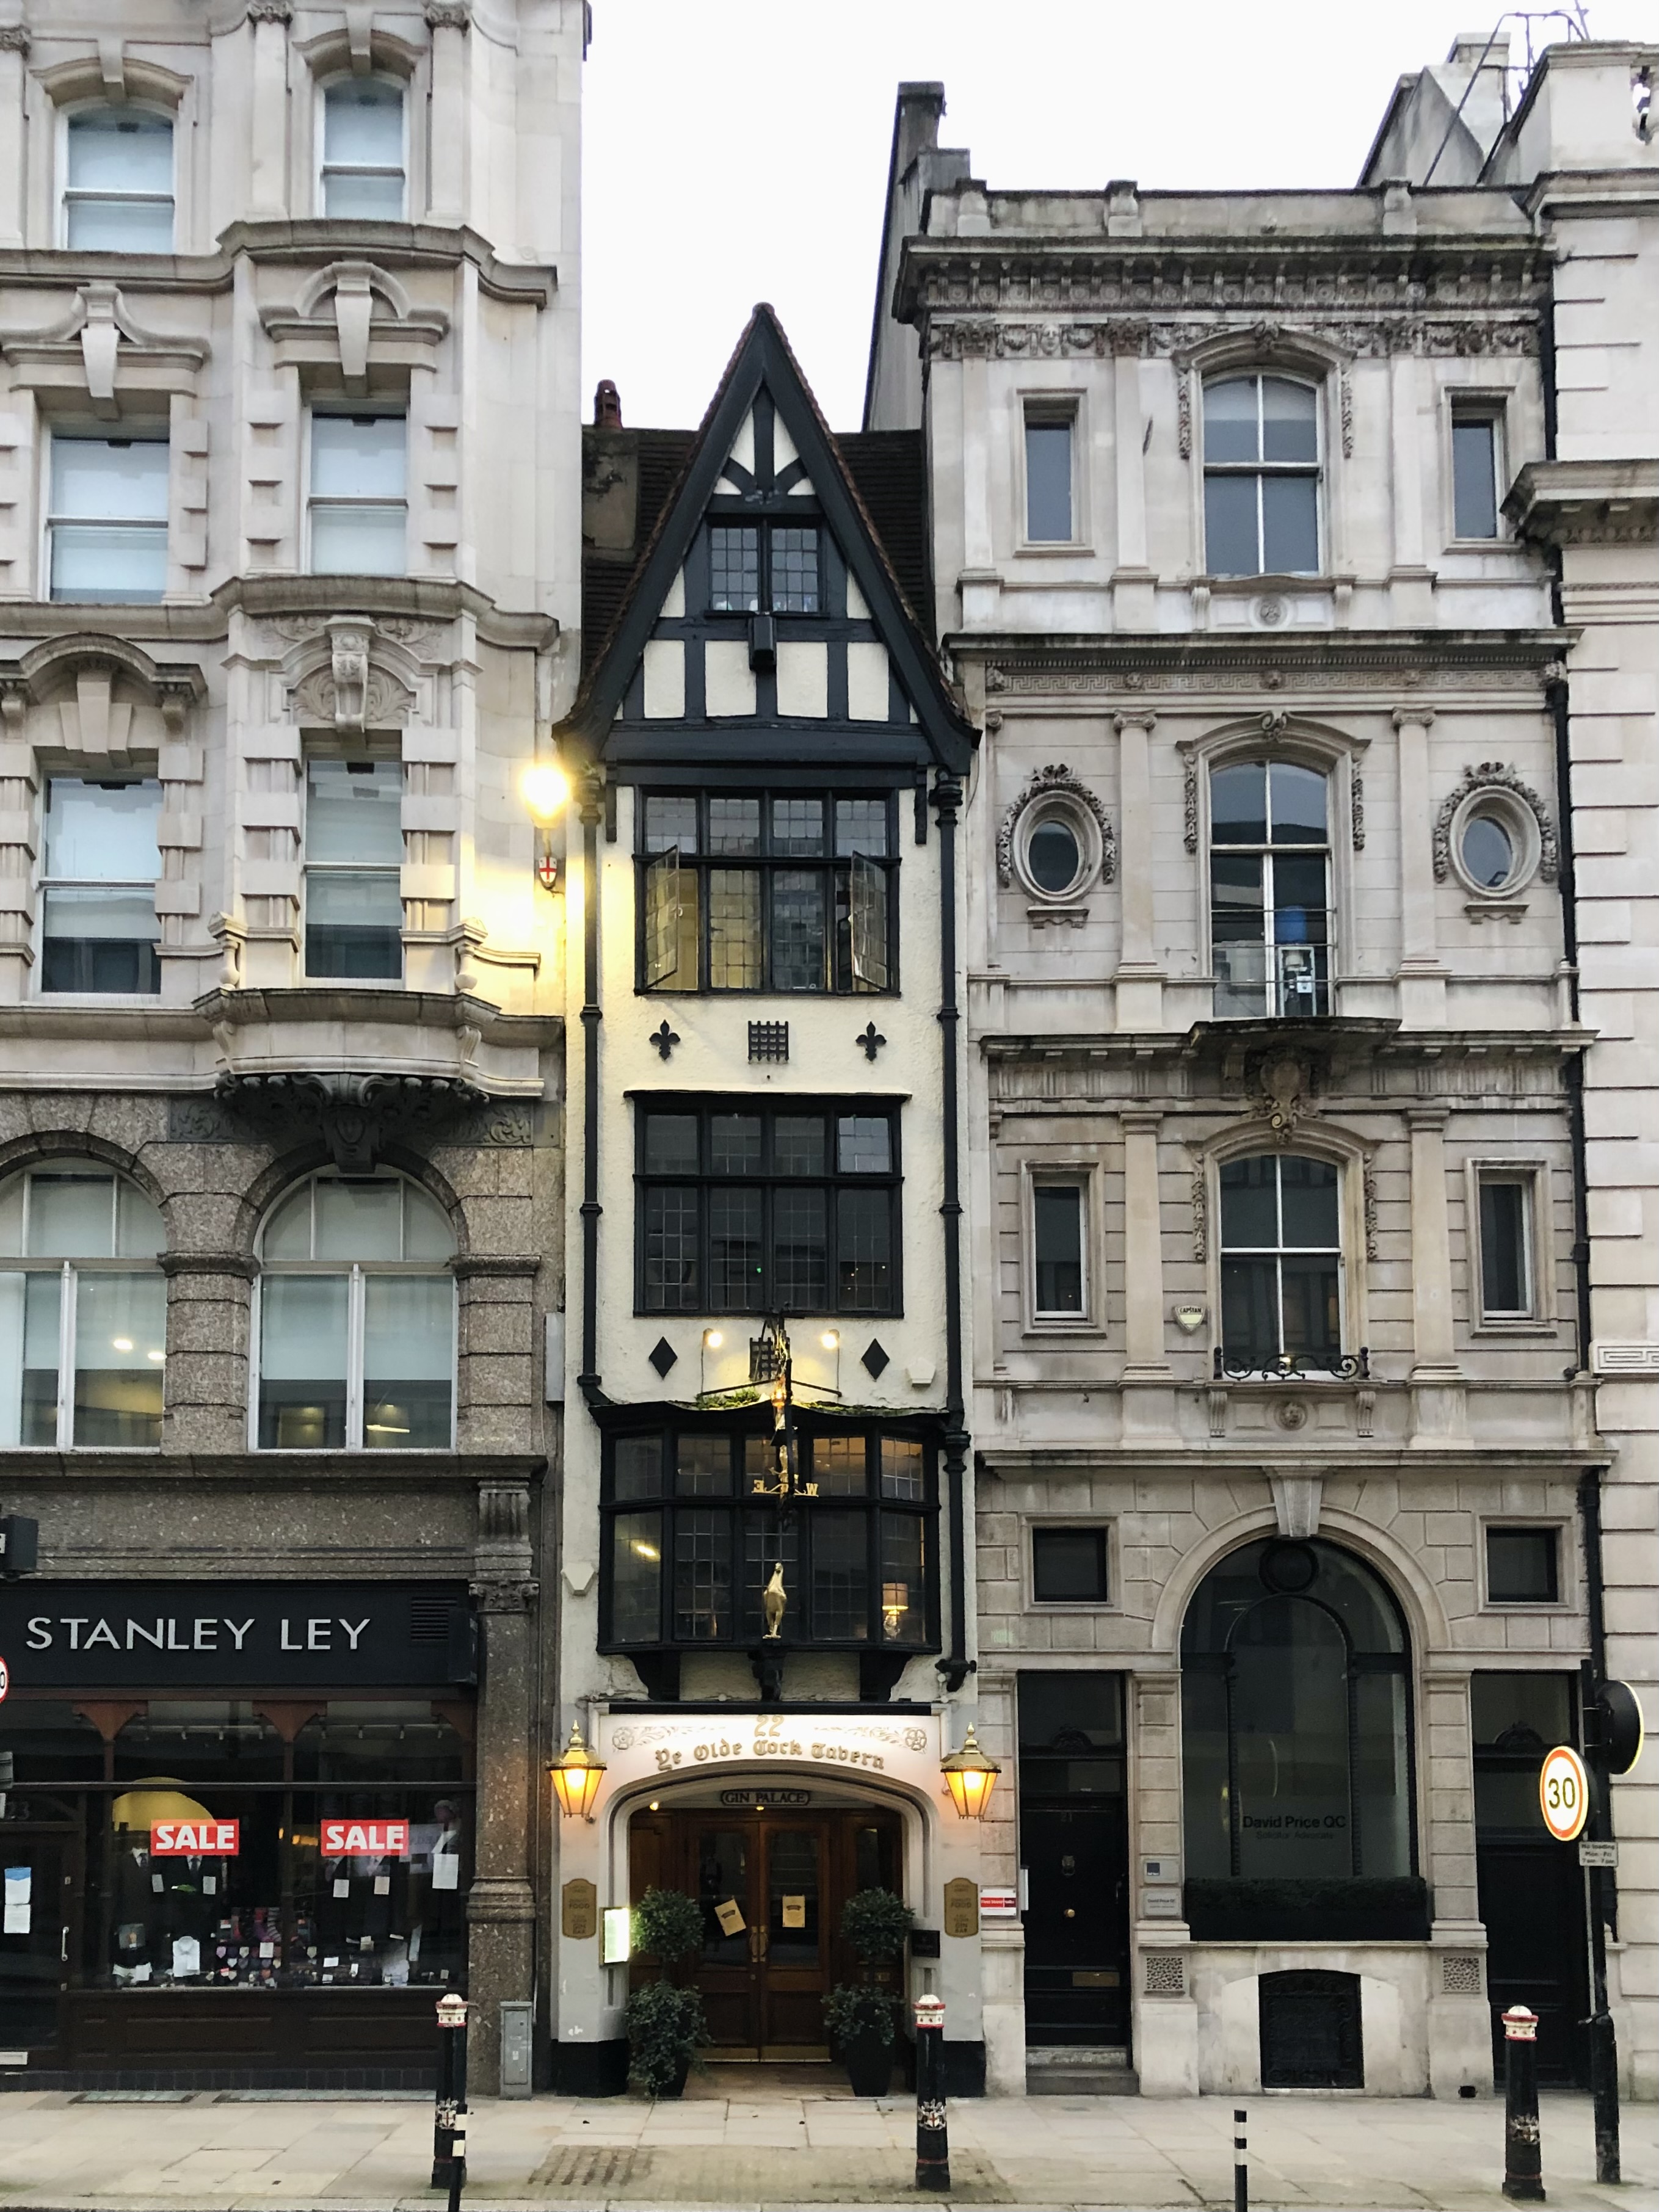 Fleet Street: oldest streets in London